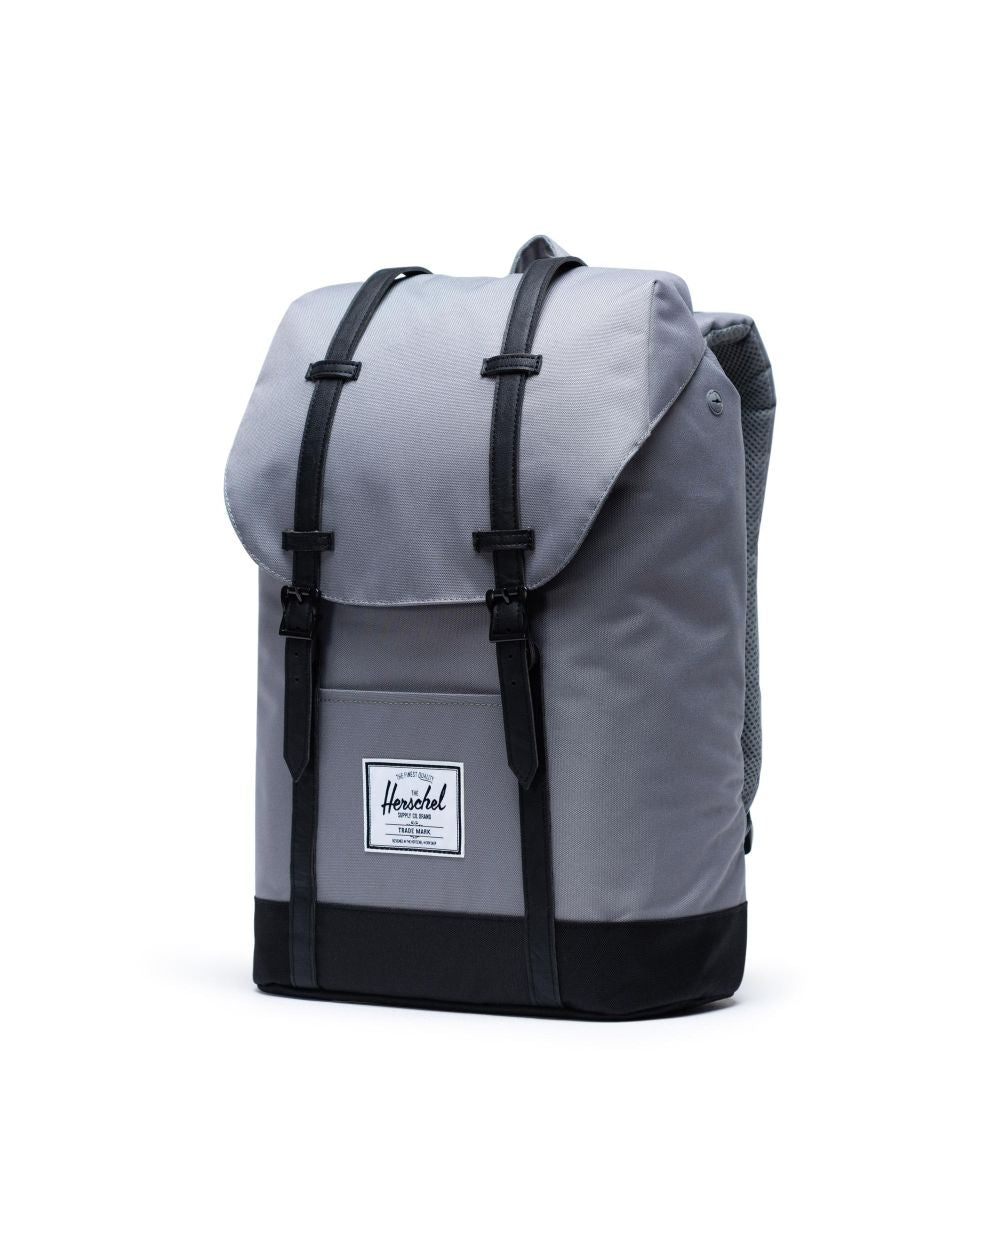 Herschel Supply Co. - Retreat Backpack, Grey/Black